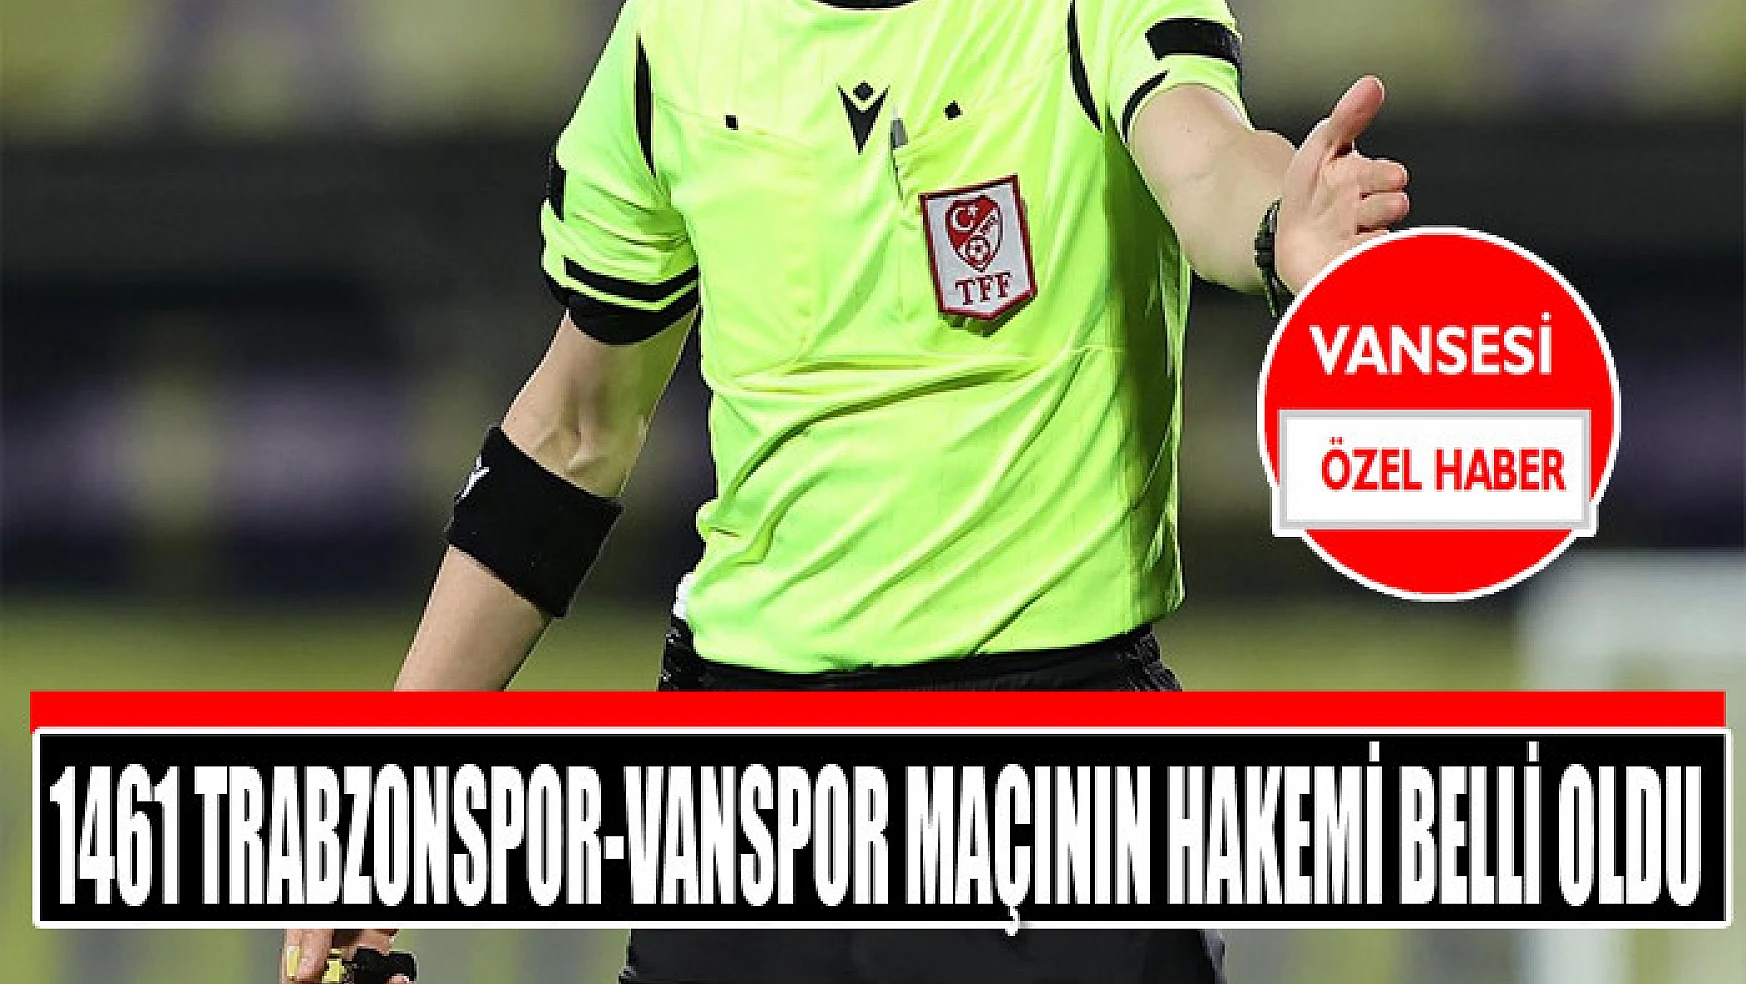 1461 Trabzonspor-Vanspor maçının hakemi belli oldu